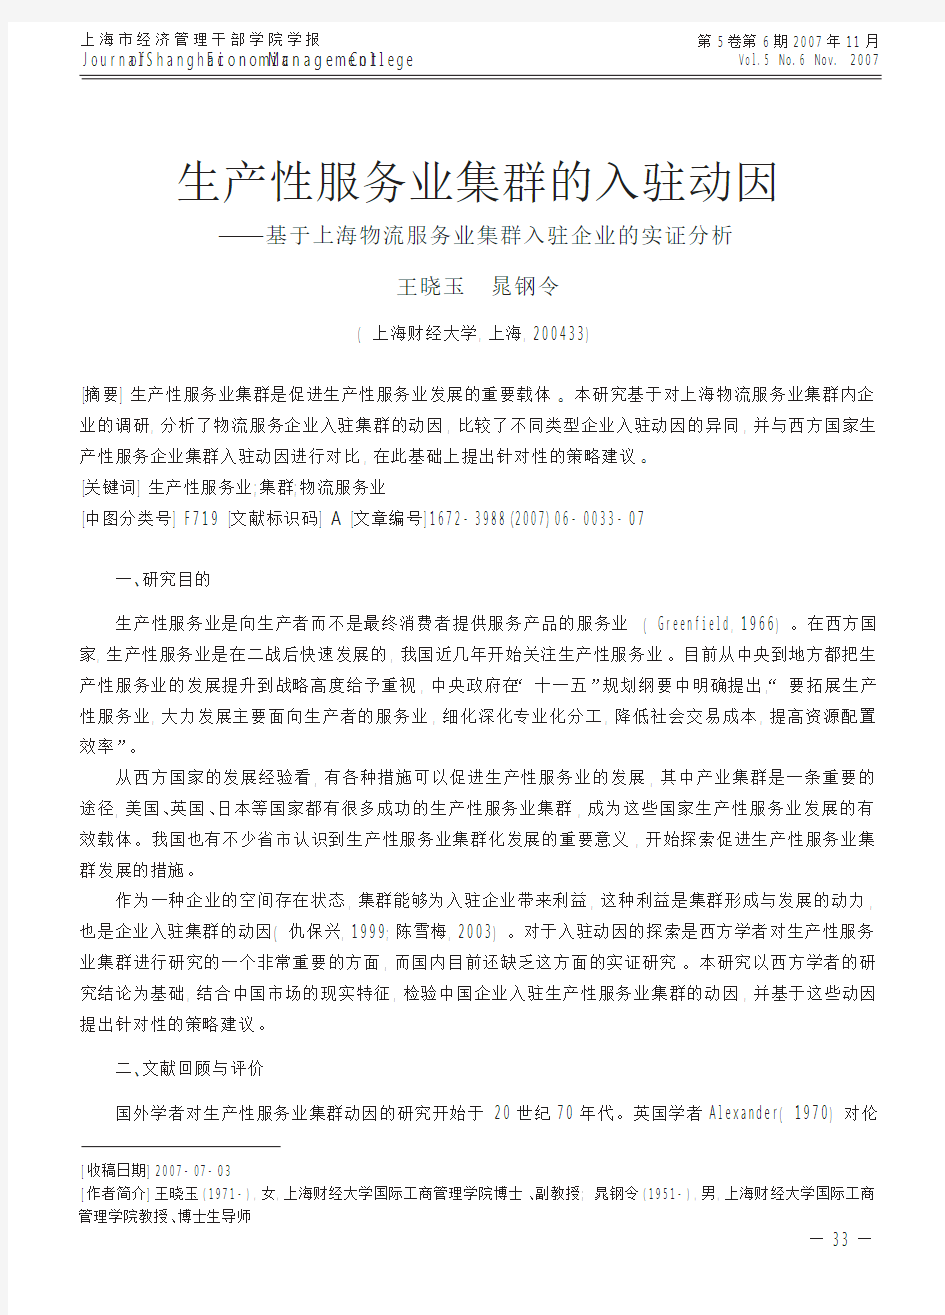 生产性服务业集群的入驻动因_基于上海物流服务业集群入驻企业的实证分析